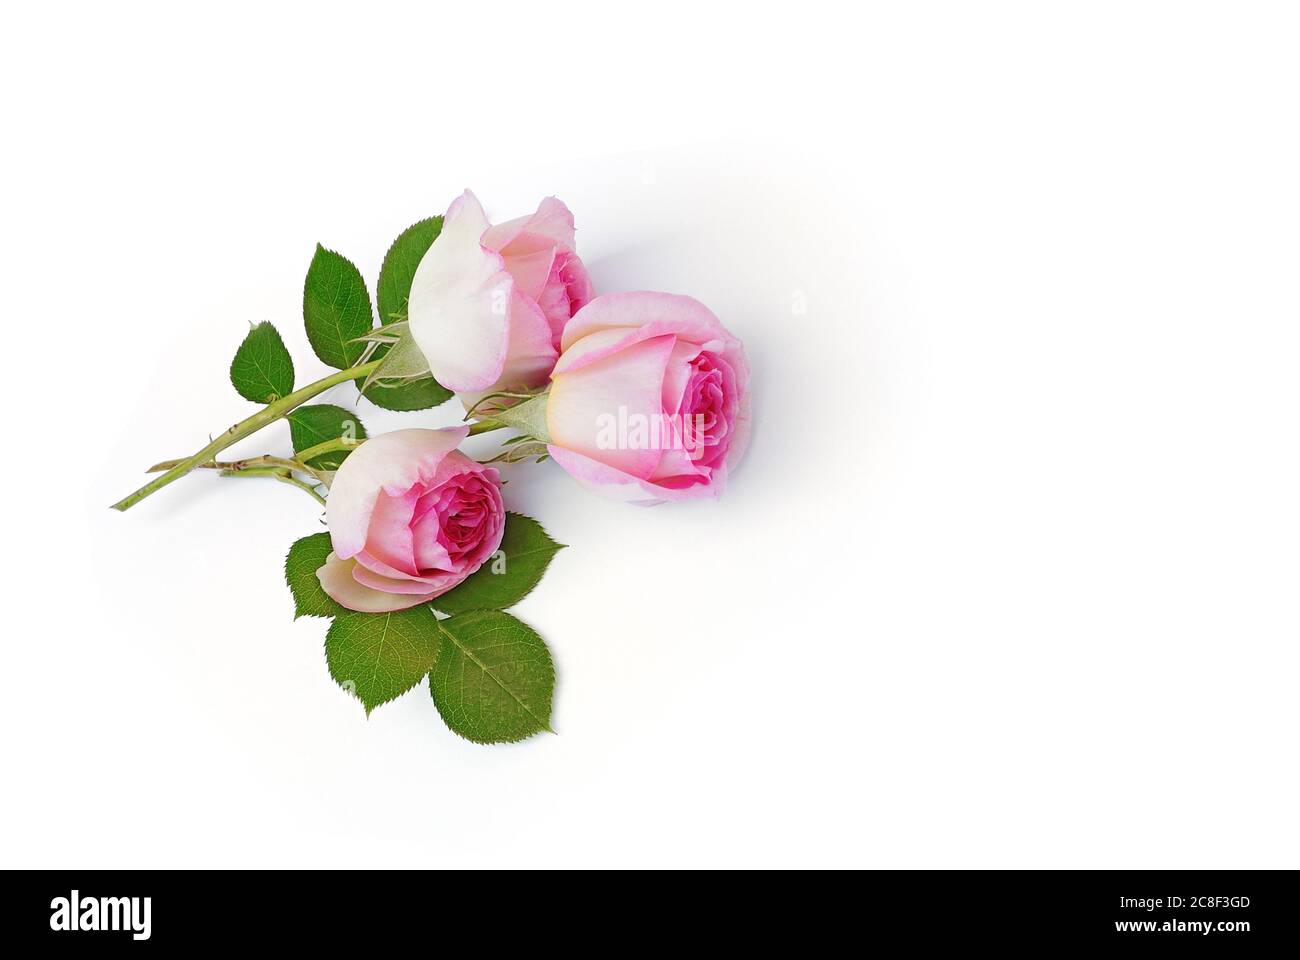 de belles roses se trouvent sur fond blanc Banque D'Images